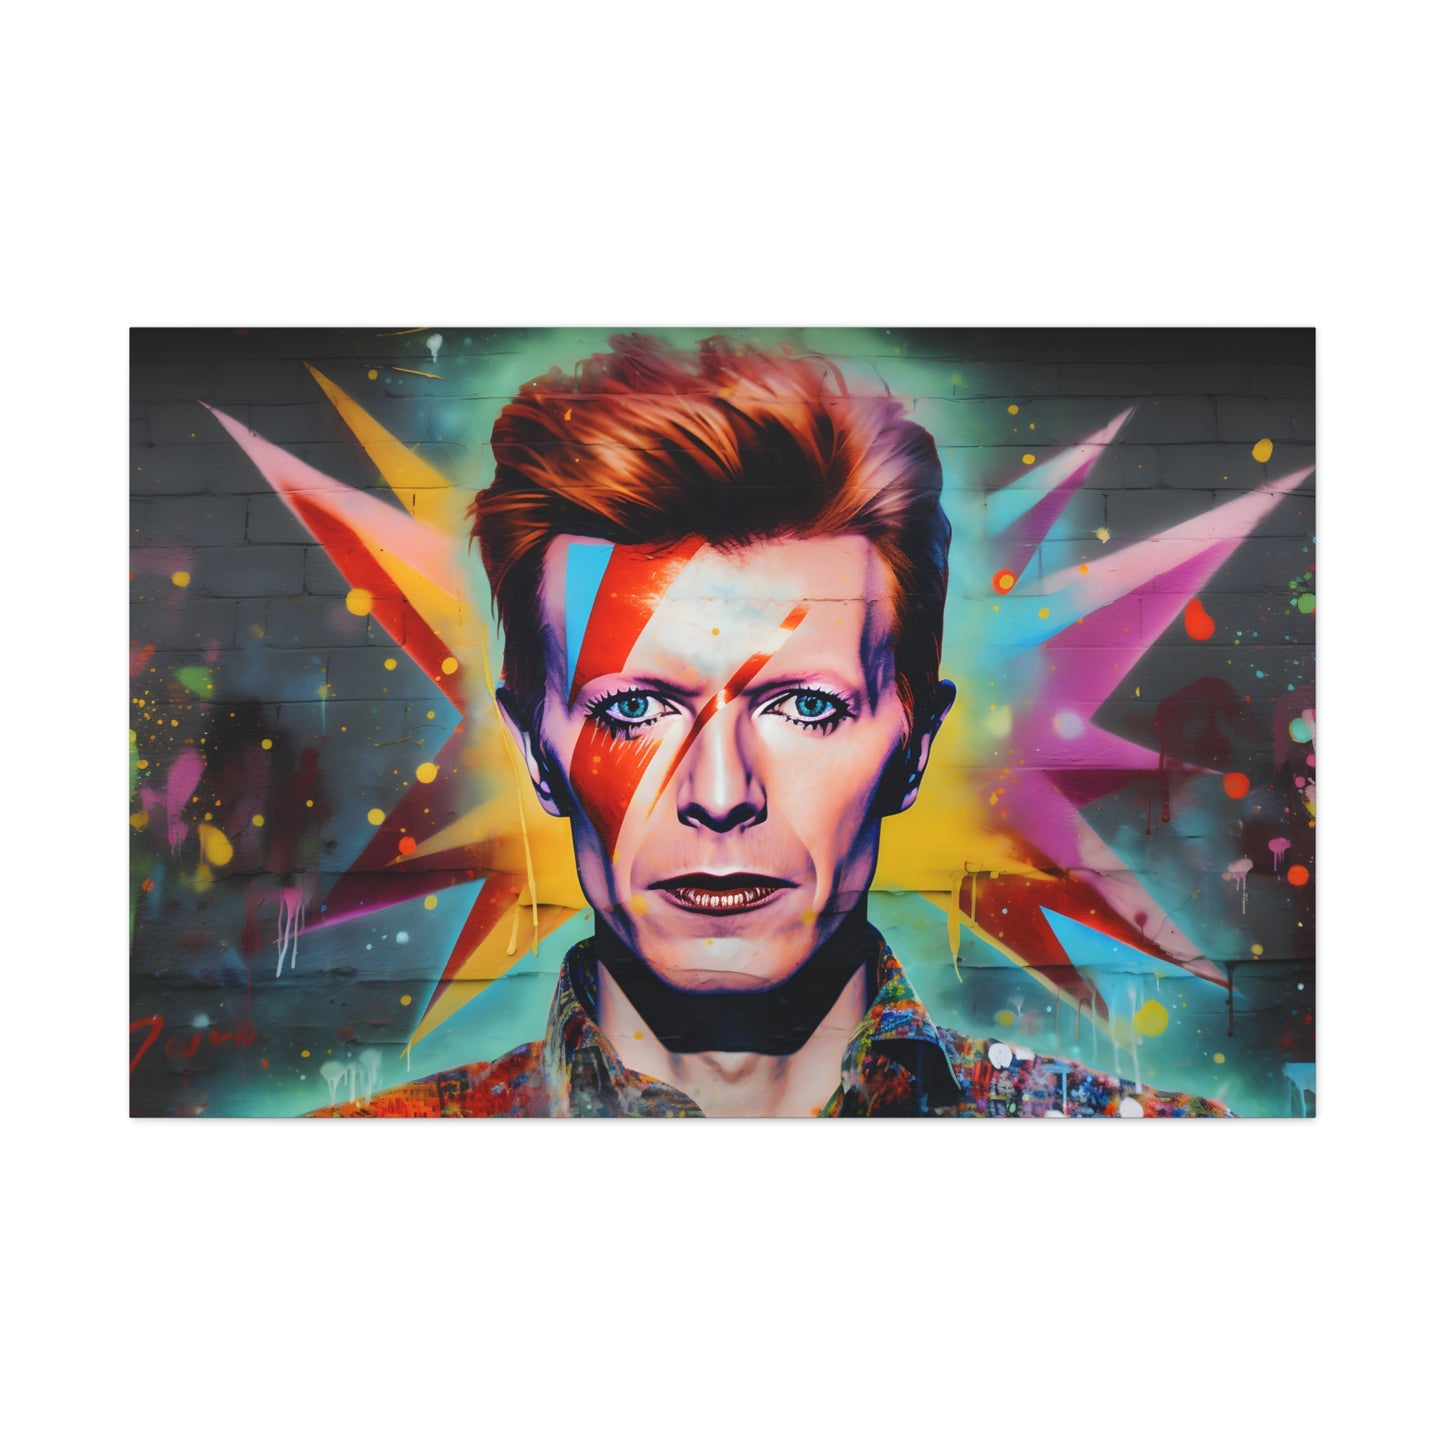 David Bowie (Ziggy Stardust) II